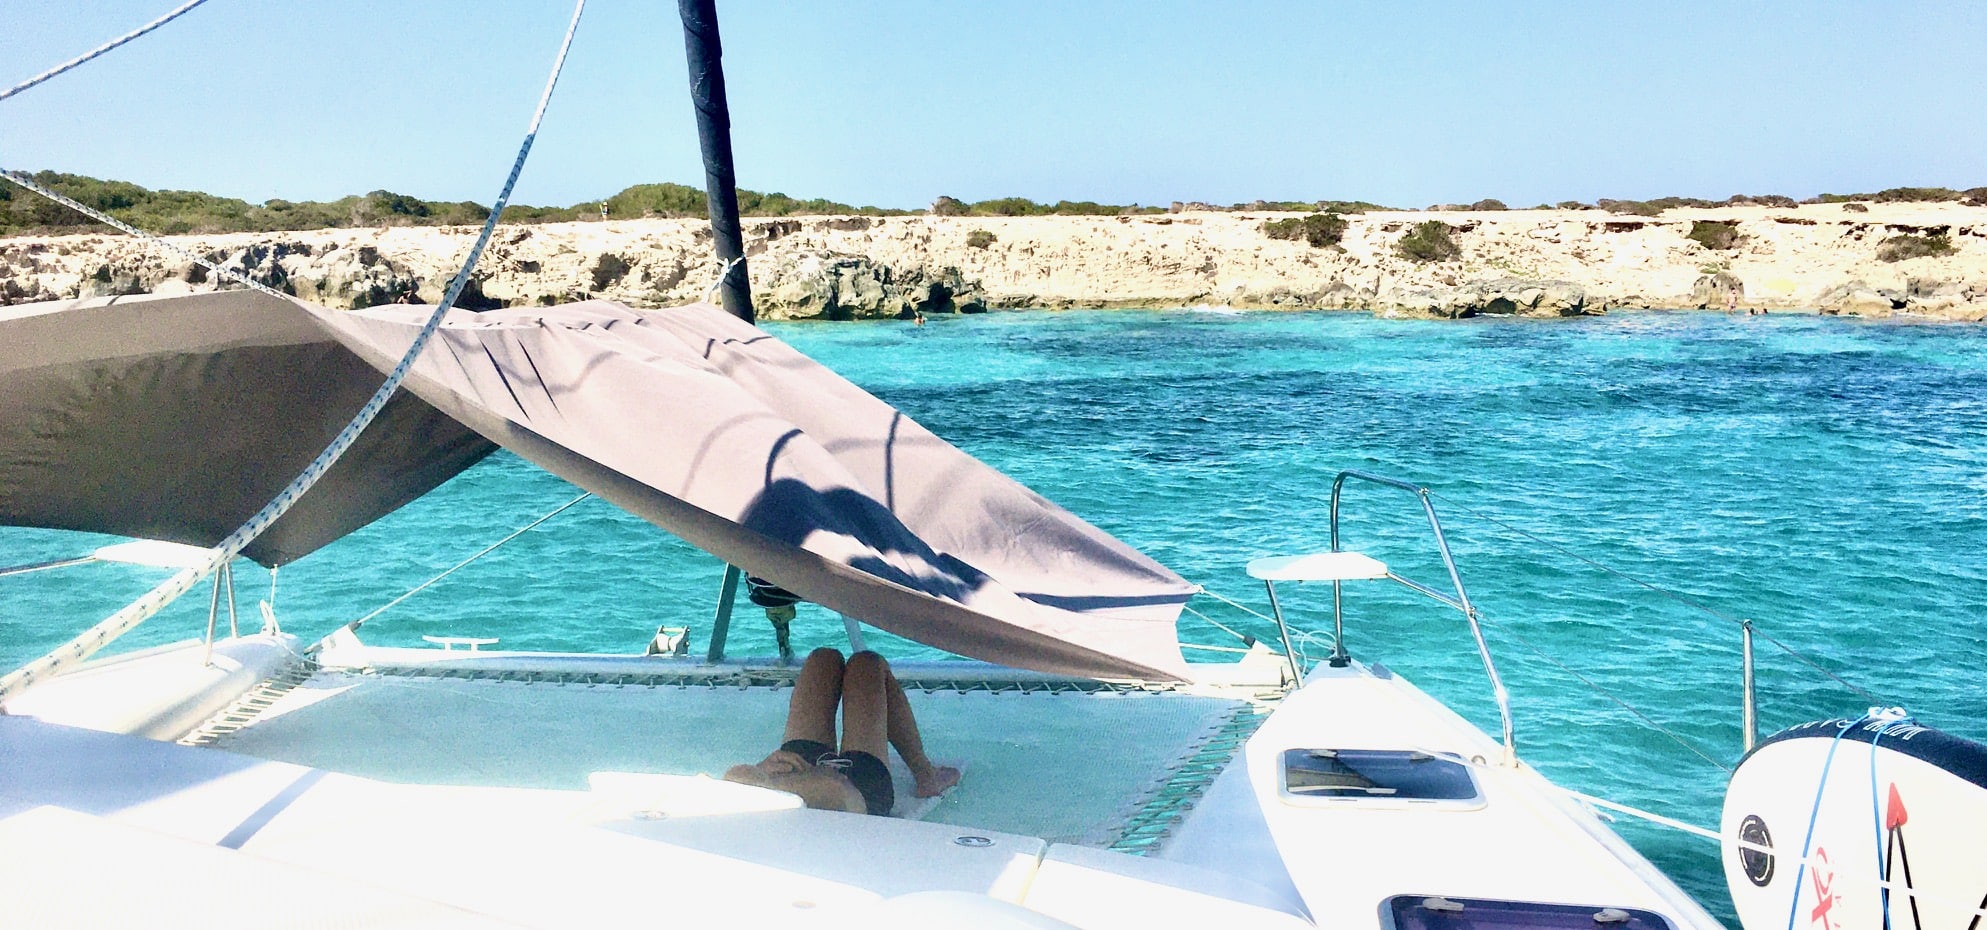 Alquilar catamaran en Ibiza por un día, cliente tumbado en la red frente al parque natural de Salinas.